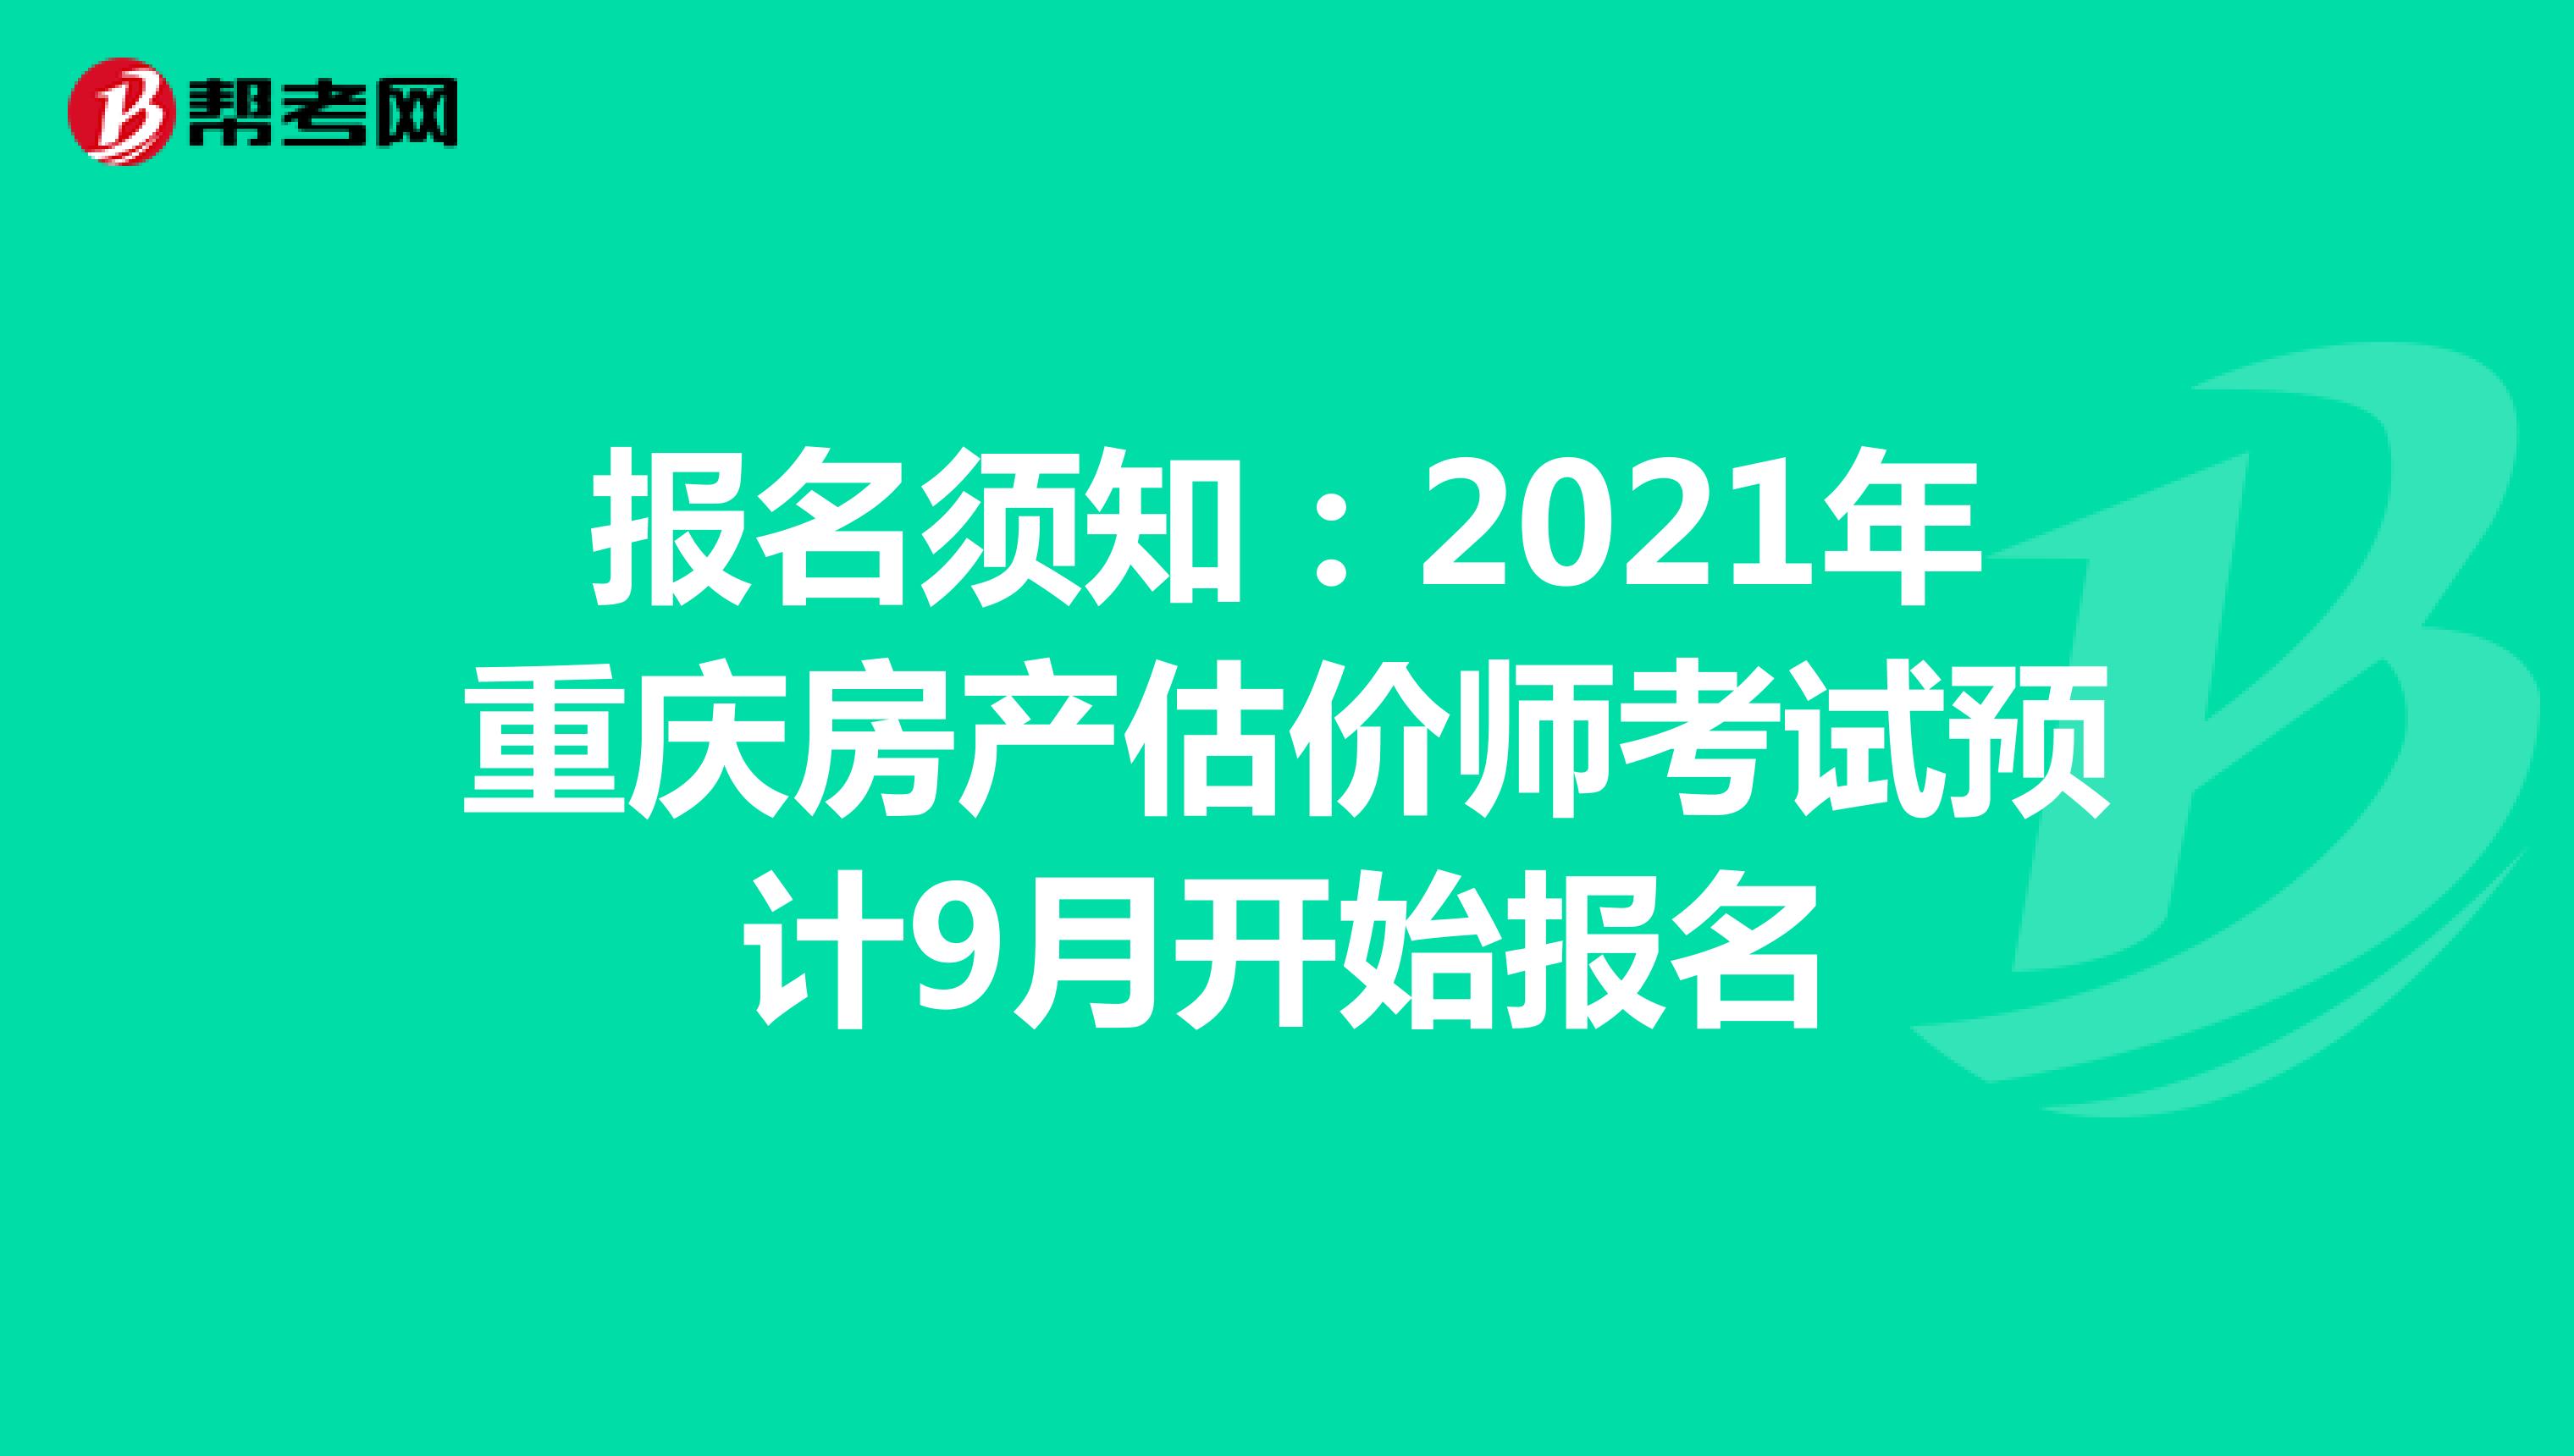 报名须知：2021年重庆房产估价师考试预计9月开始报名